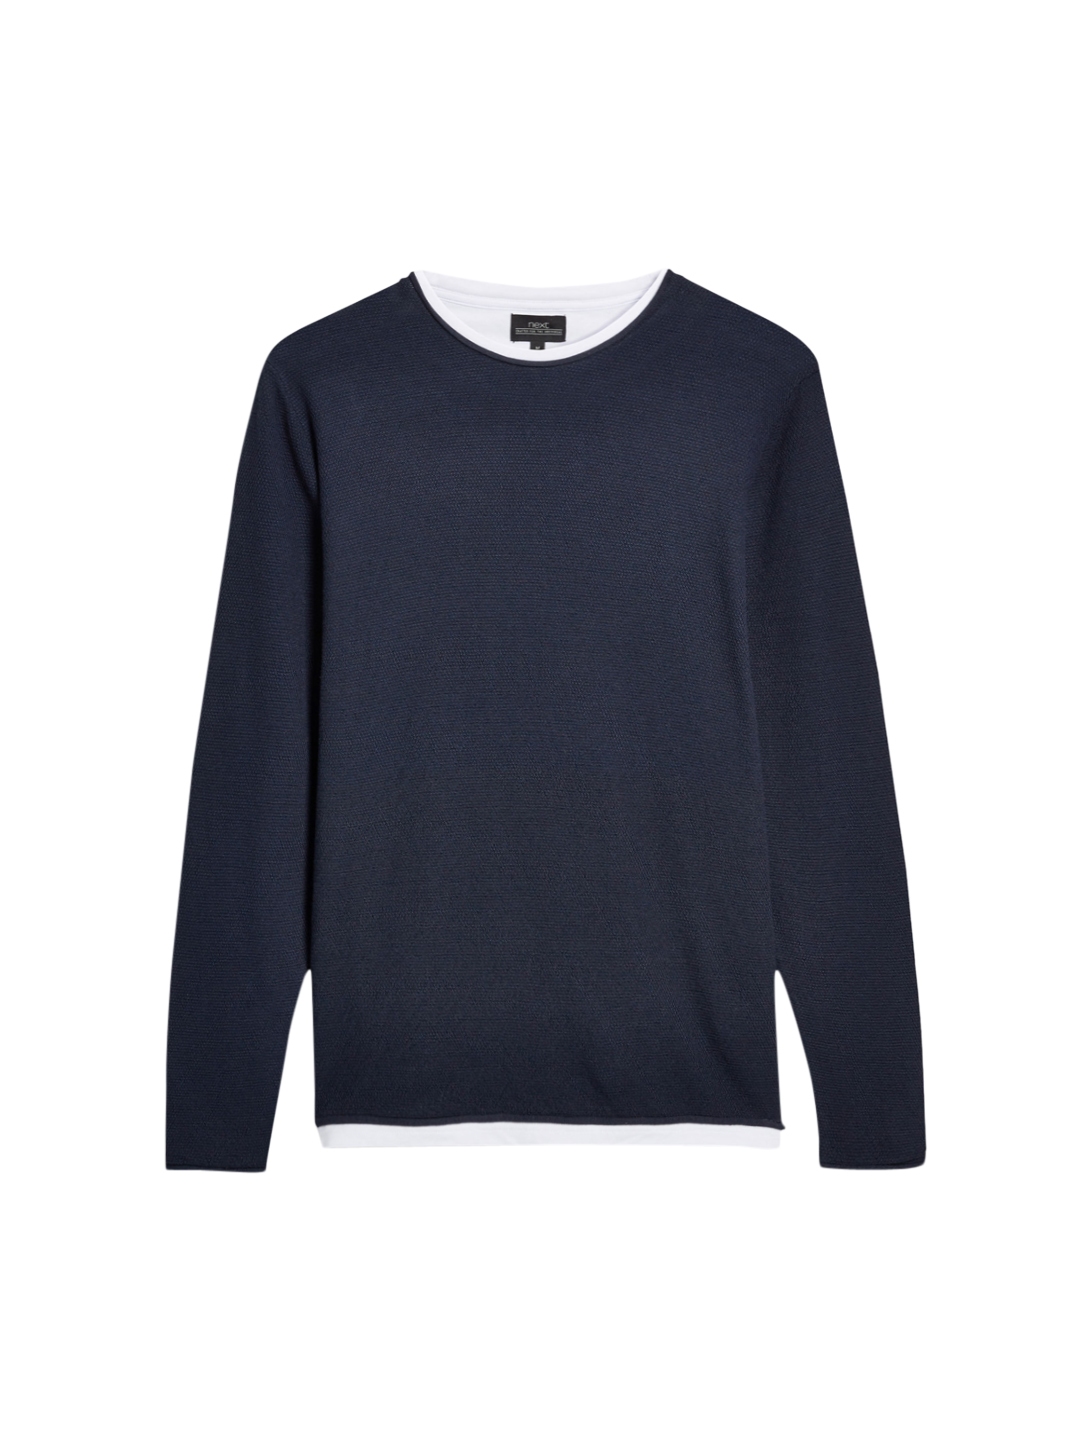 Buy Next Men Navy Blue Solid Sweatshirt - Sweatshirts for Men 2198973 ...